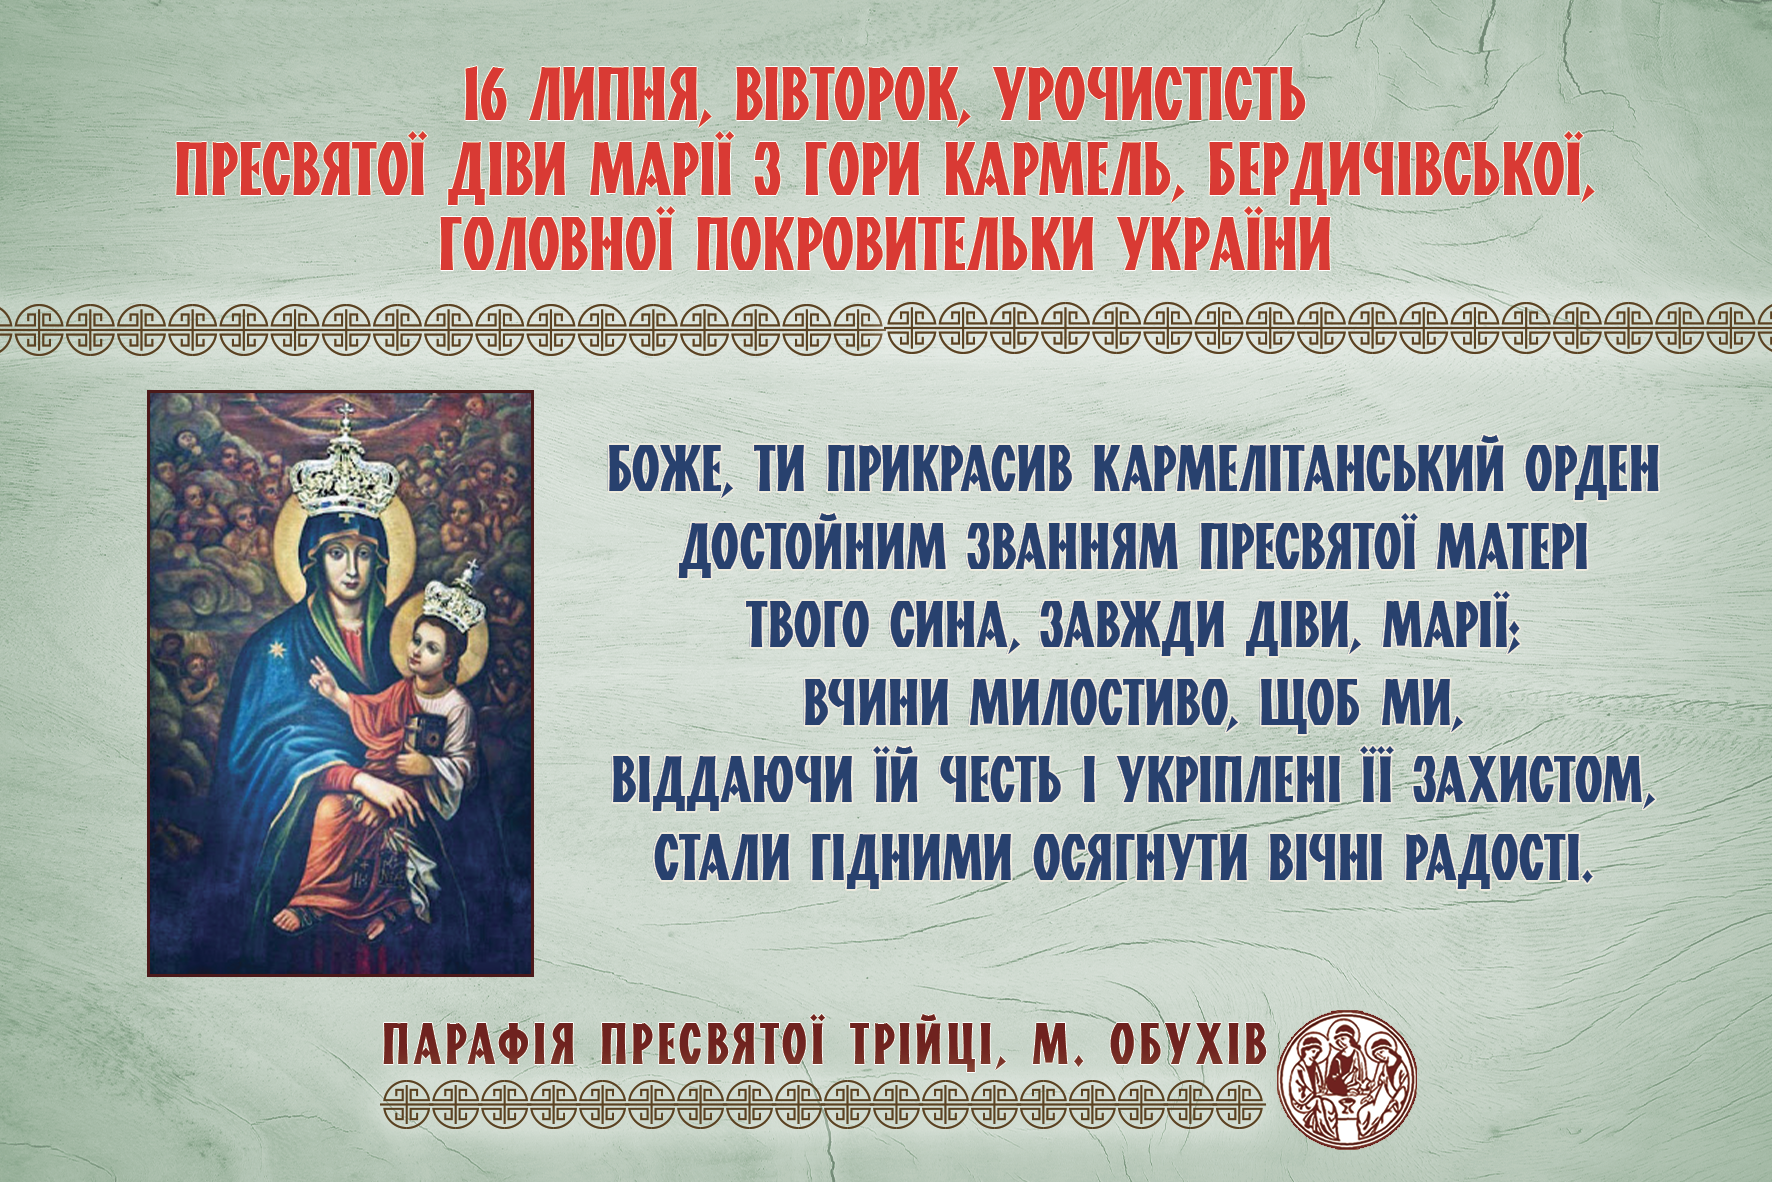 16 липня, вівторок, урочистість Пресвятої Діви Марії з Гори Кармель, Бердичівської, Головної Покровительки України.